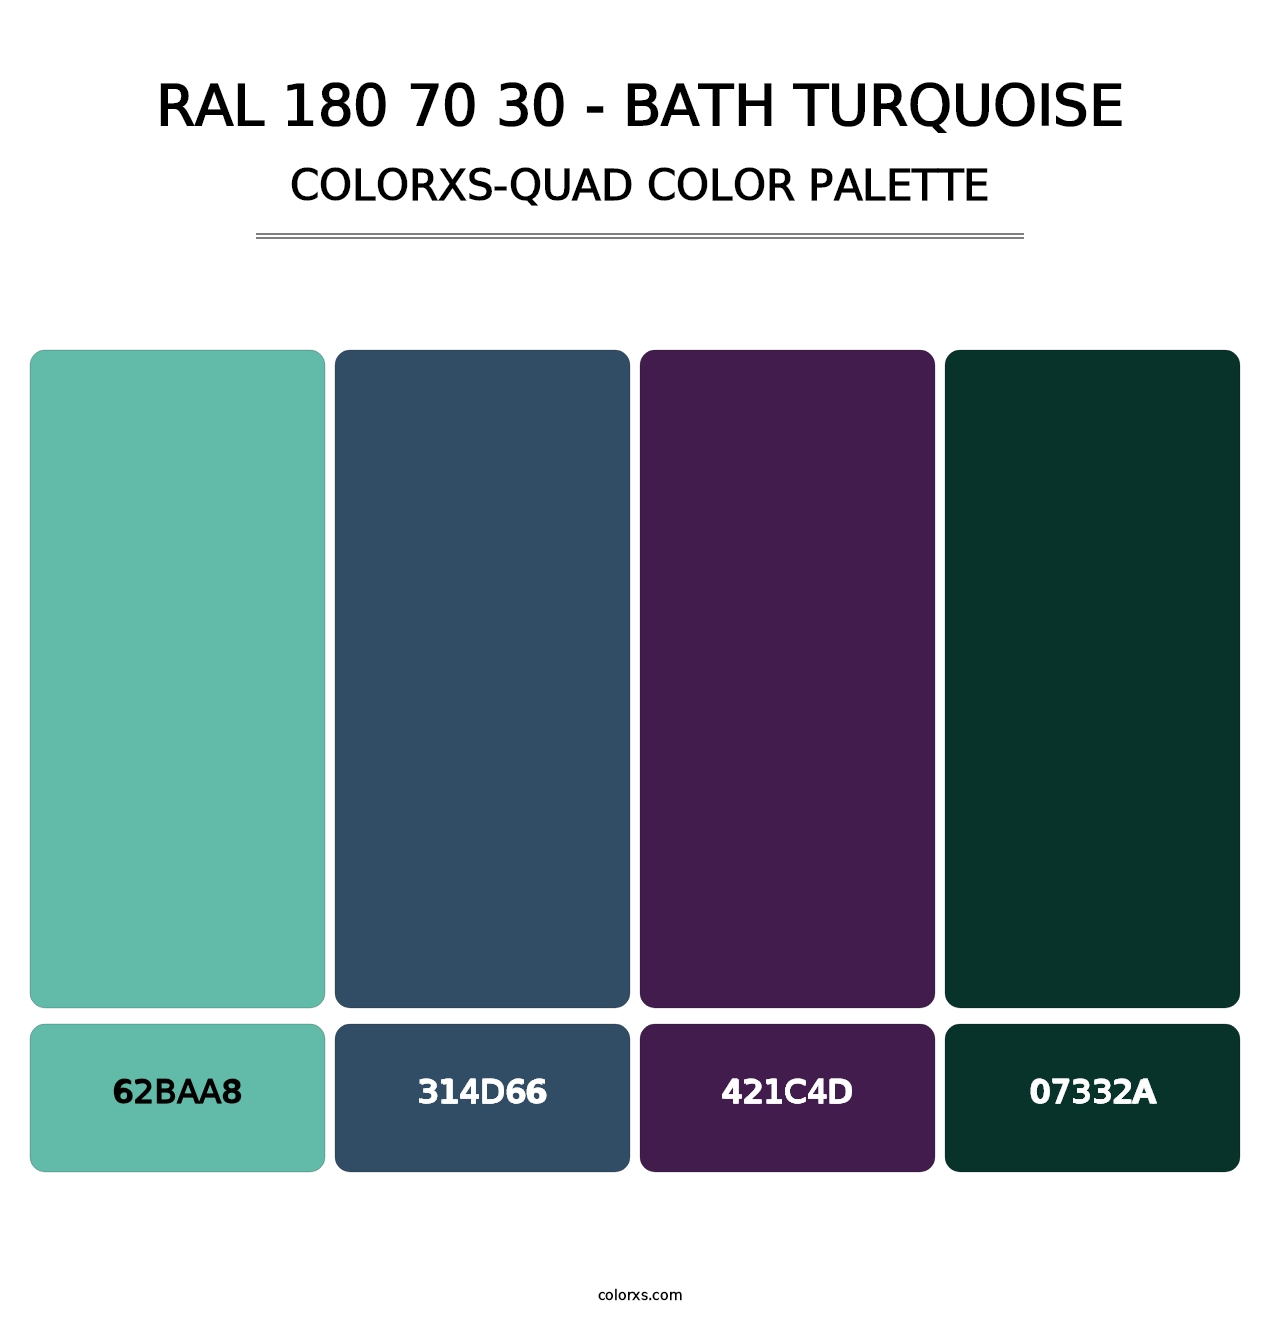 RAL 180 70 30 - Bath Turquoise - Colorxs Quad Palette